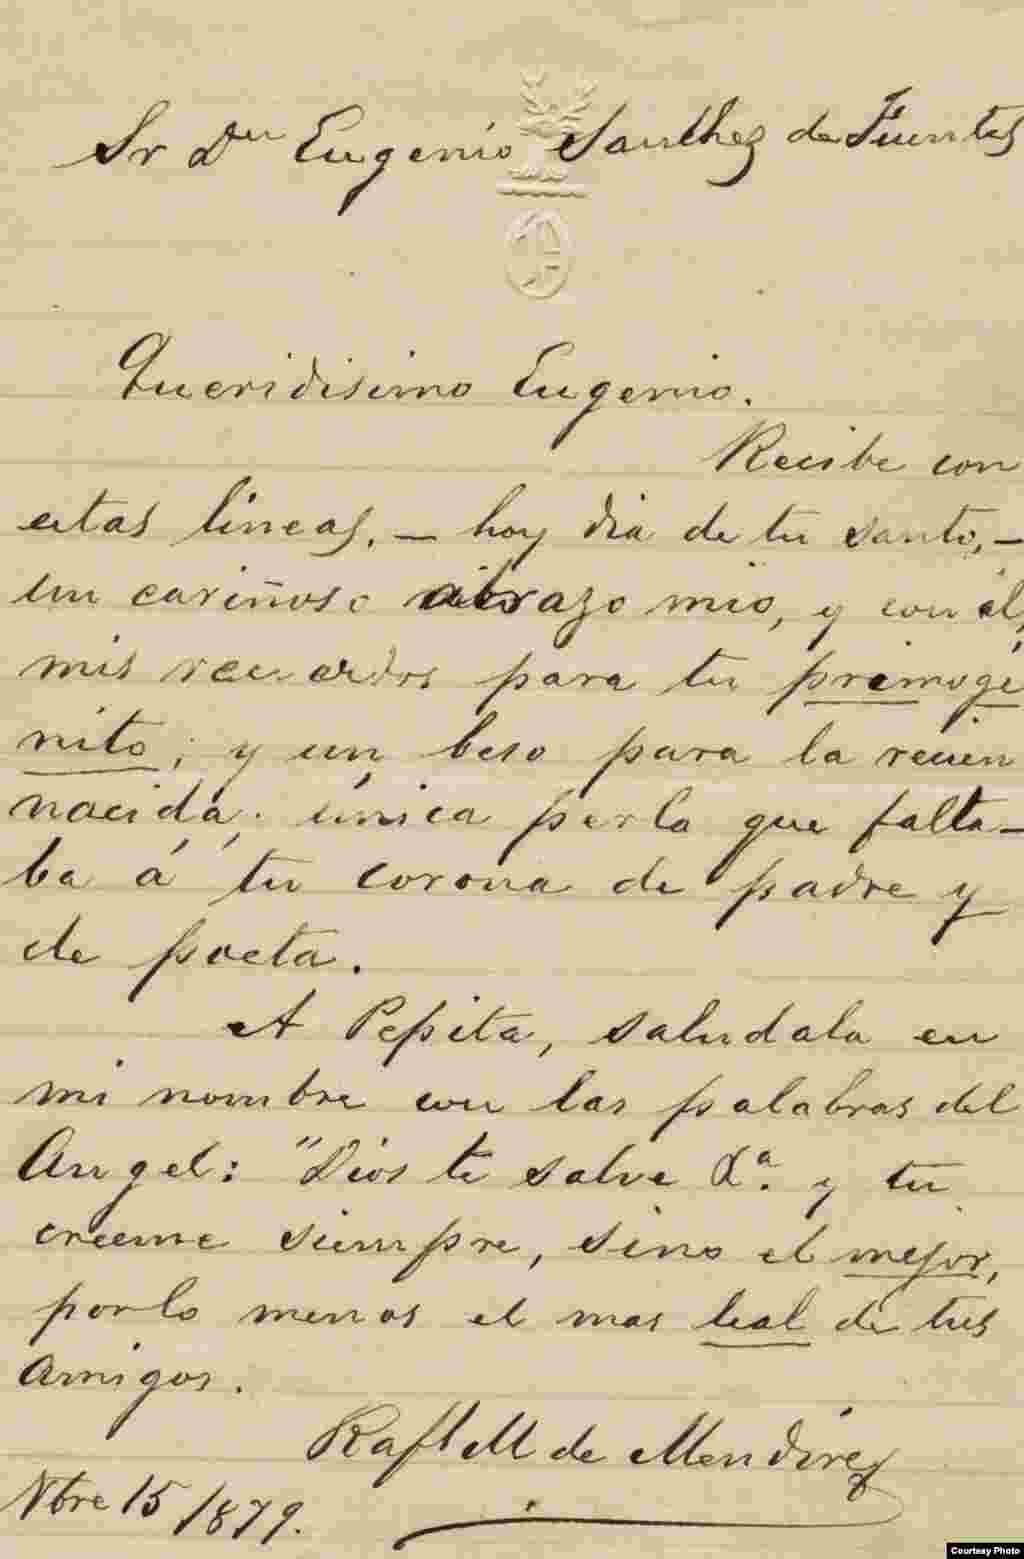 Carta de Rafael María de Mendive a Don Eugenio Sánchez de Fuentes. Cortesía de Orlando González Esteva.